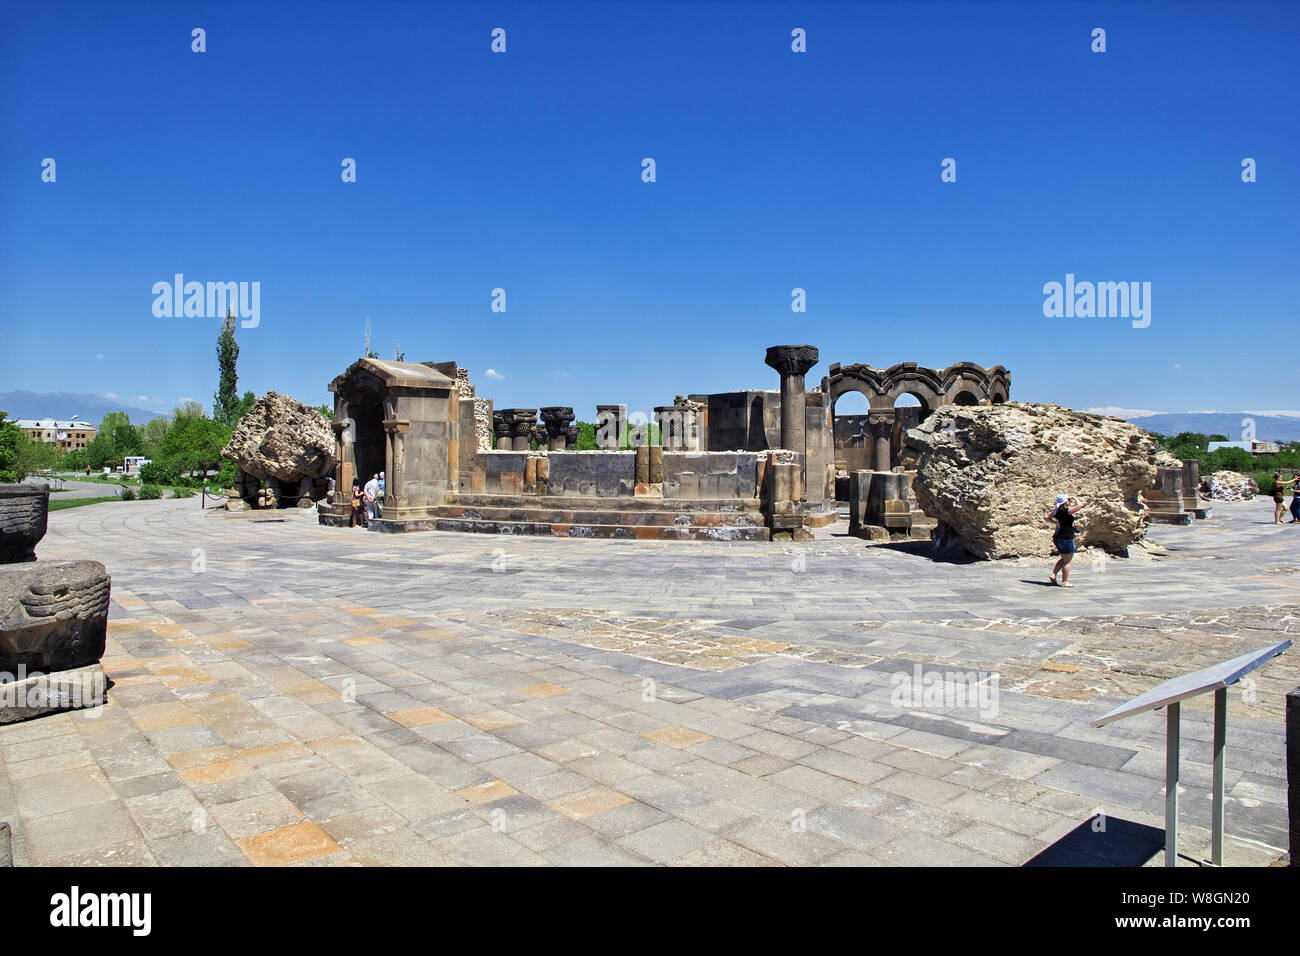 Zvartnots / Armenia - 02 MAY 2013: Zvartnots, ruins of ancient temple in Armenia Stock Photo